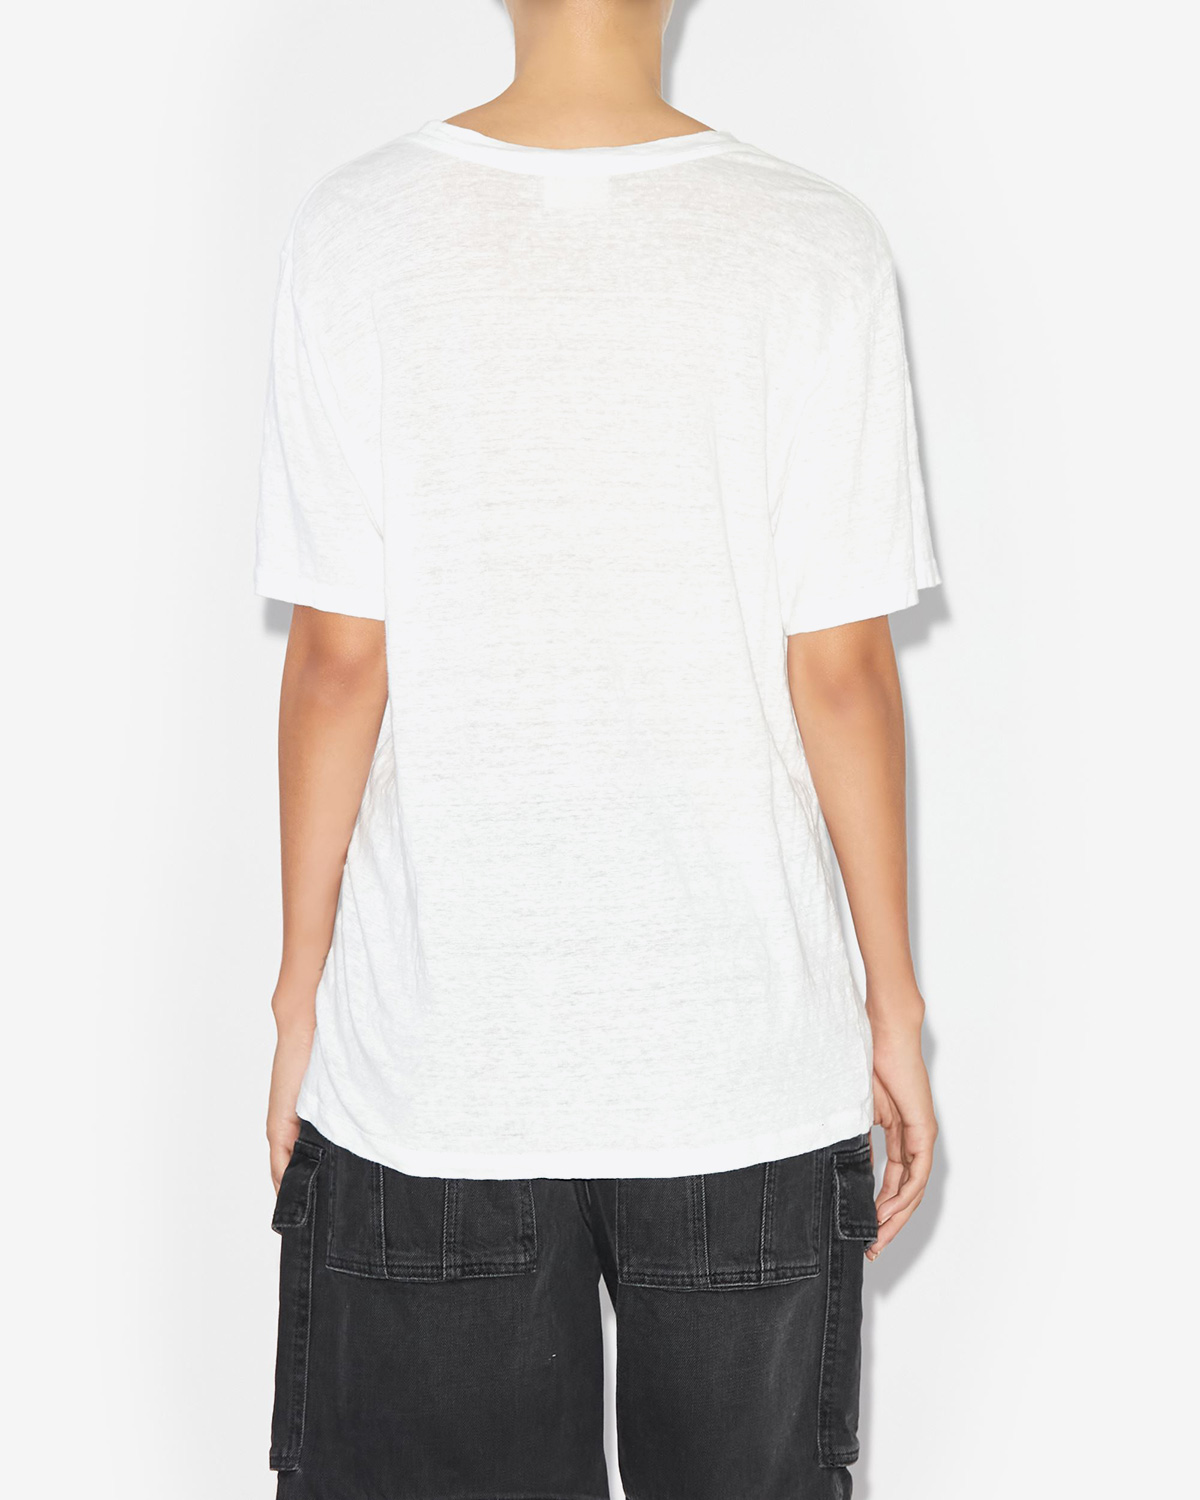 Tee-shirt manches courtes droit en lin blanc logo velours noir Marant Zewel Isabel Marant Etoile. Porté de dos.